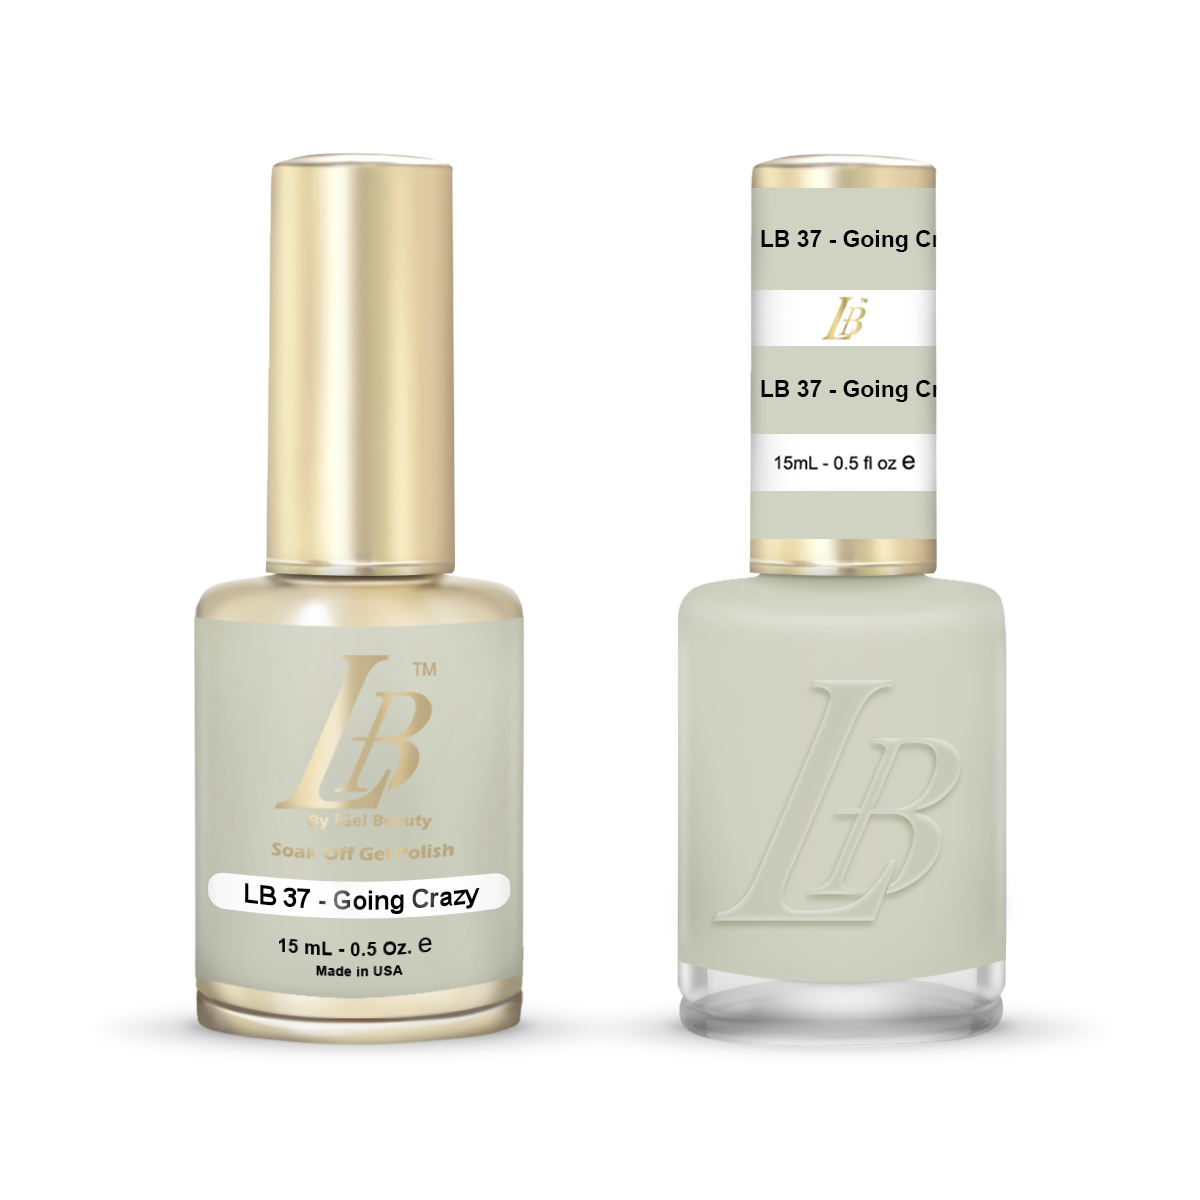 LB Duo - LB037 Going Gray